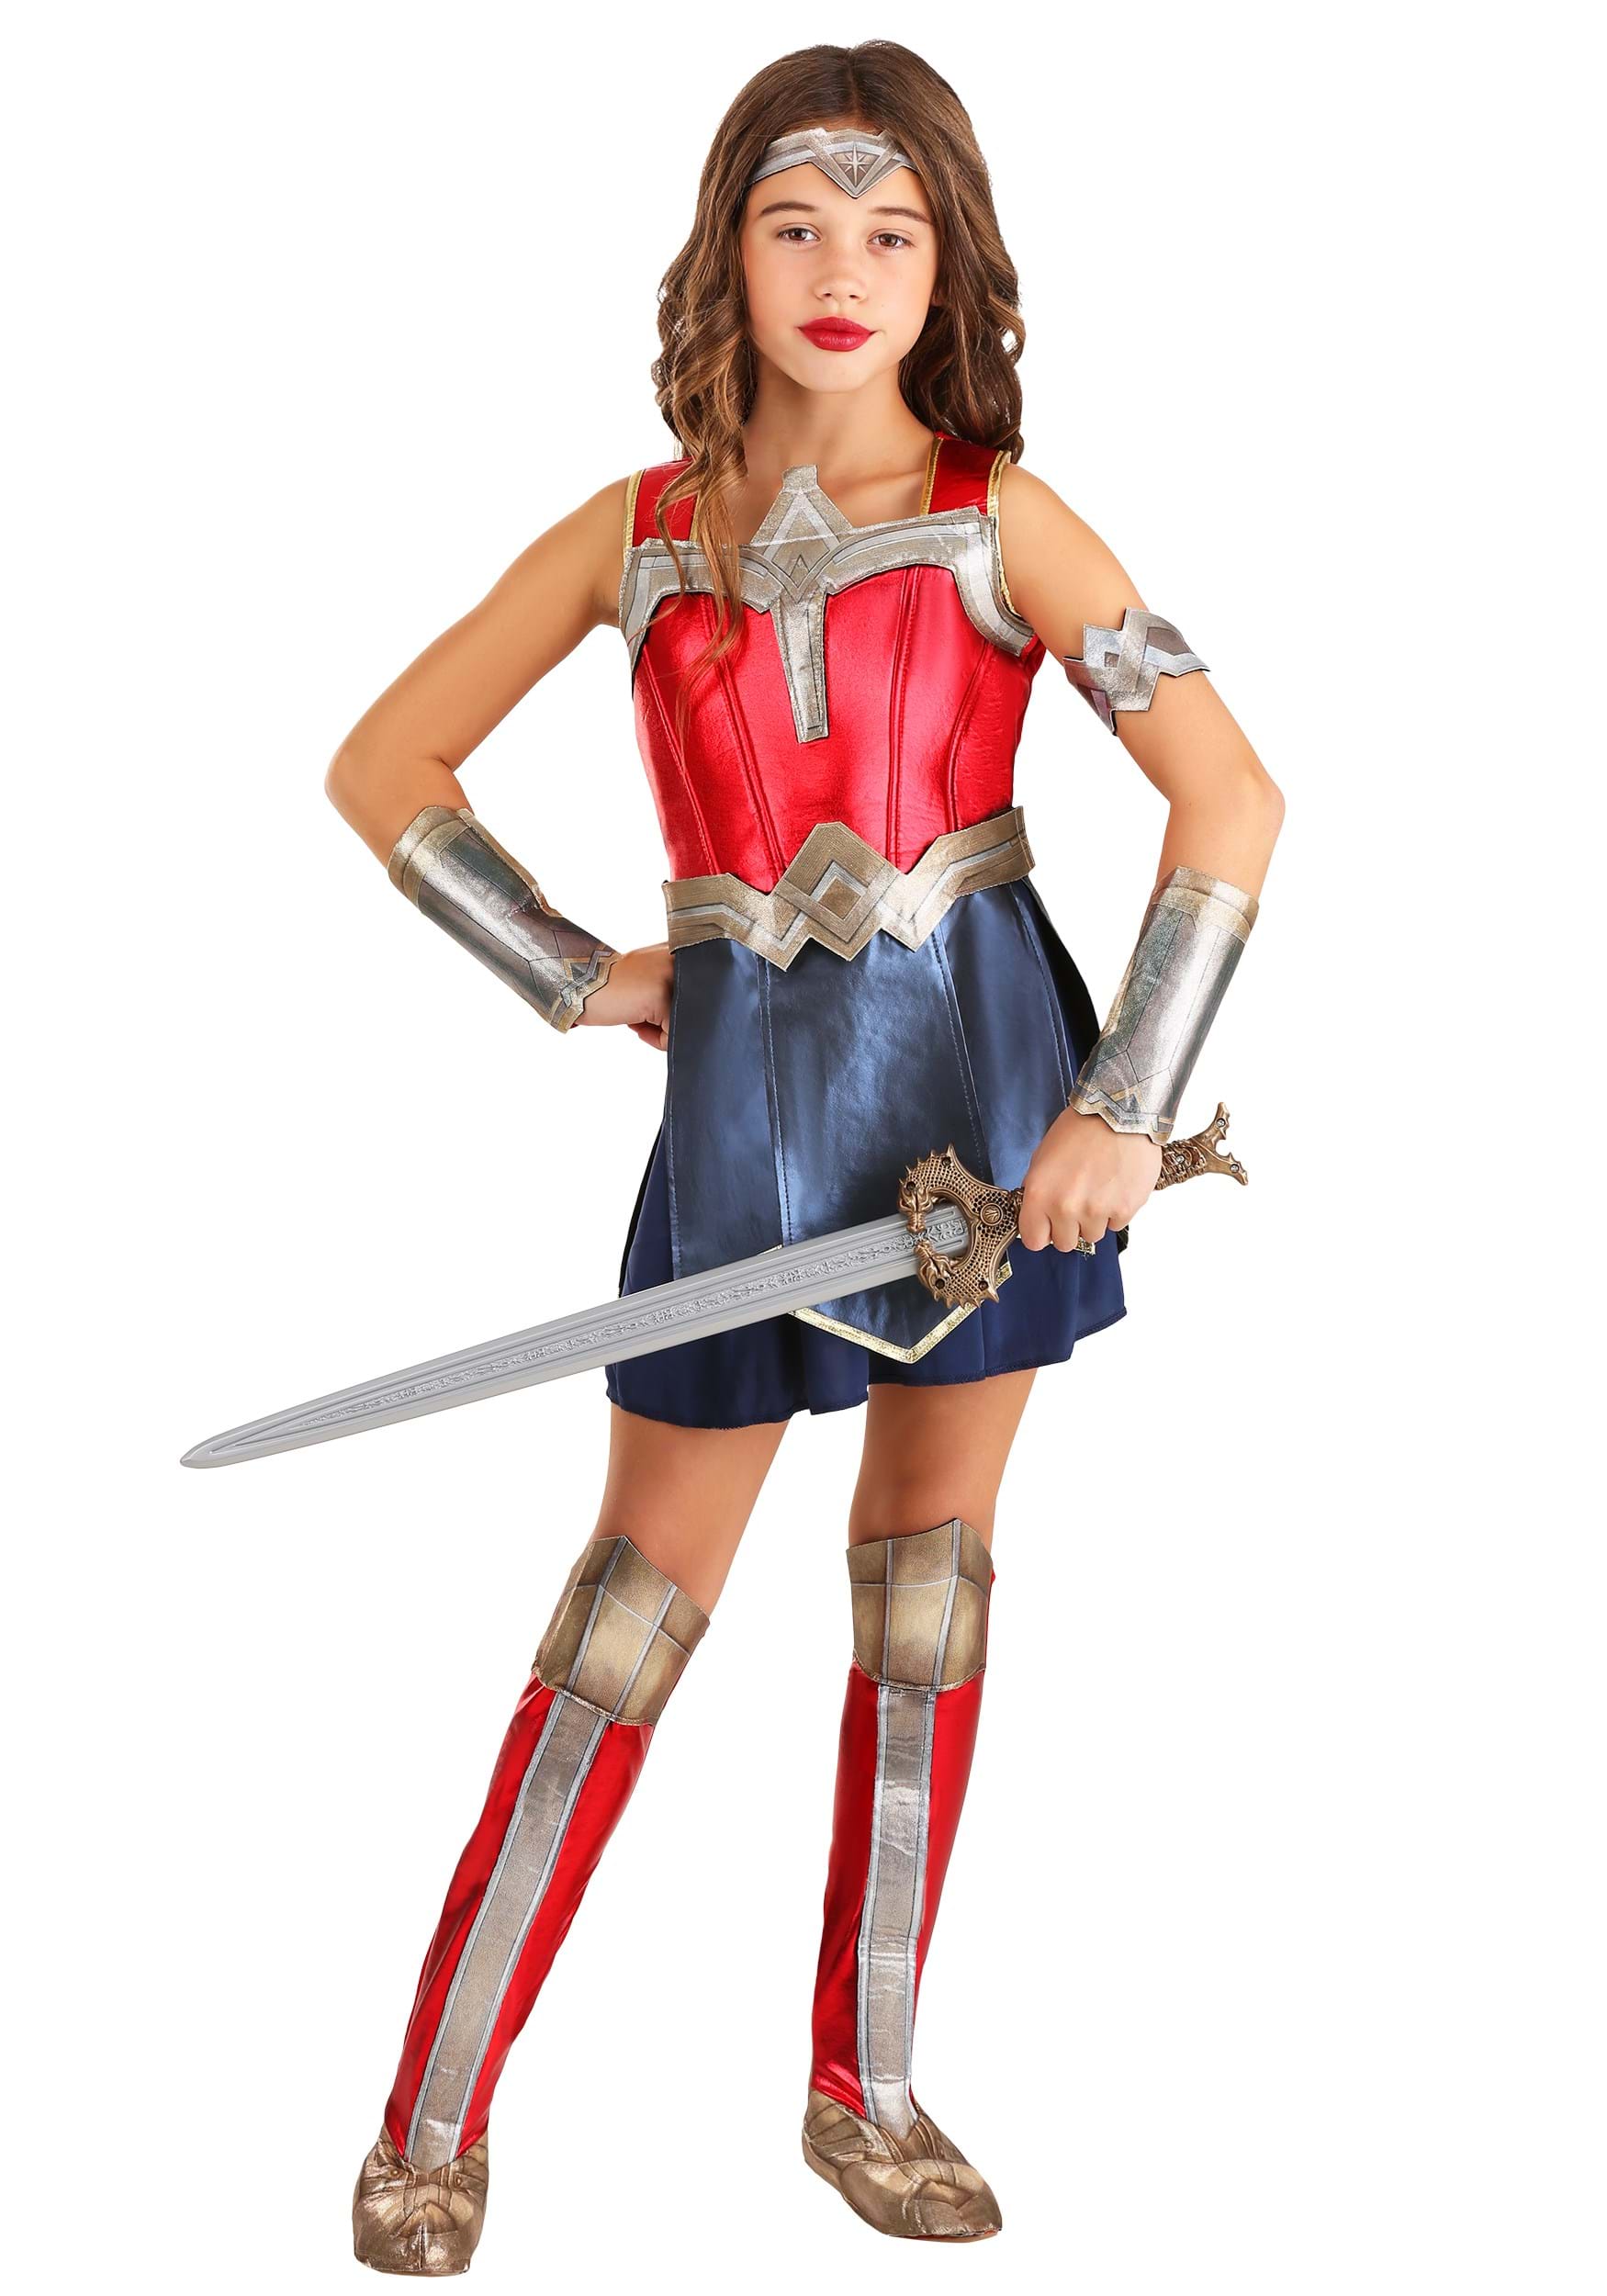 Le déguisement Wonder Woman 4-6 ans